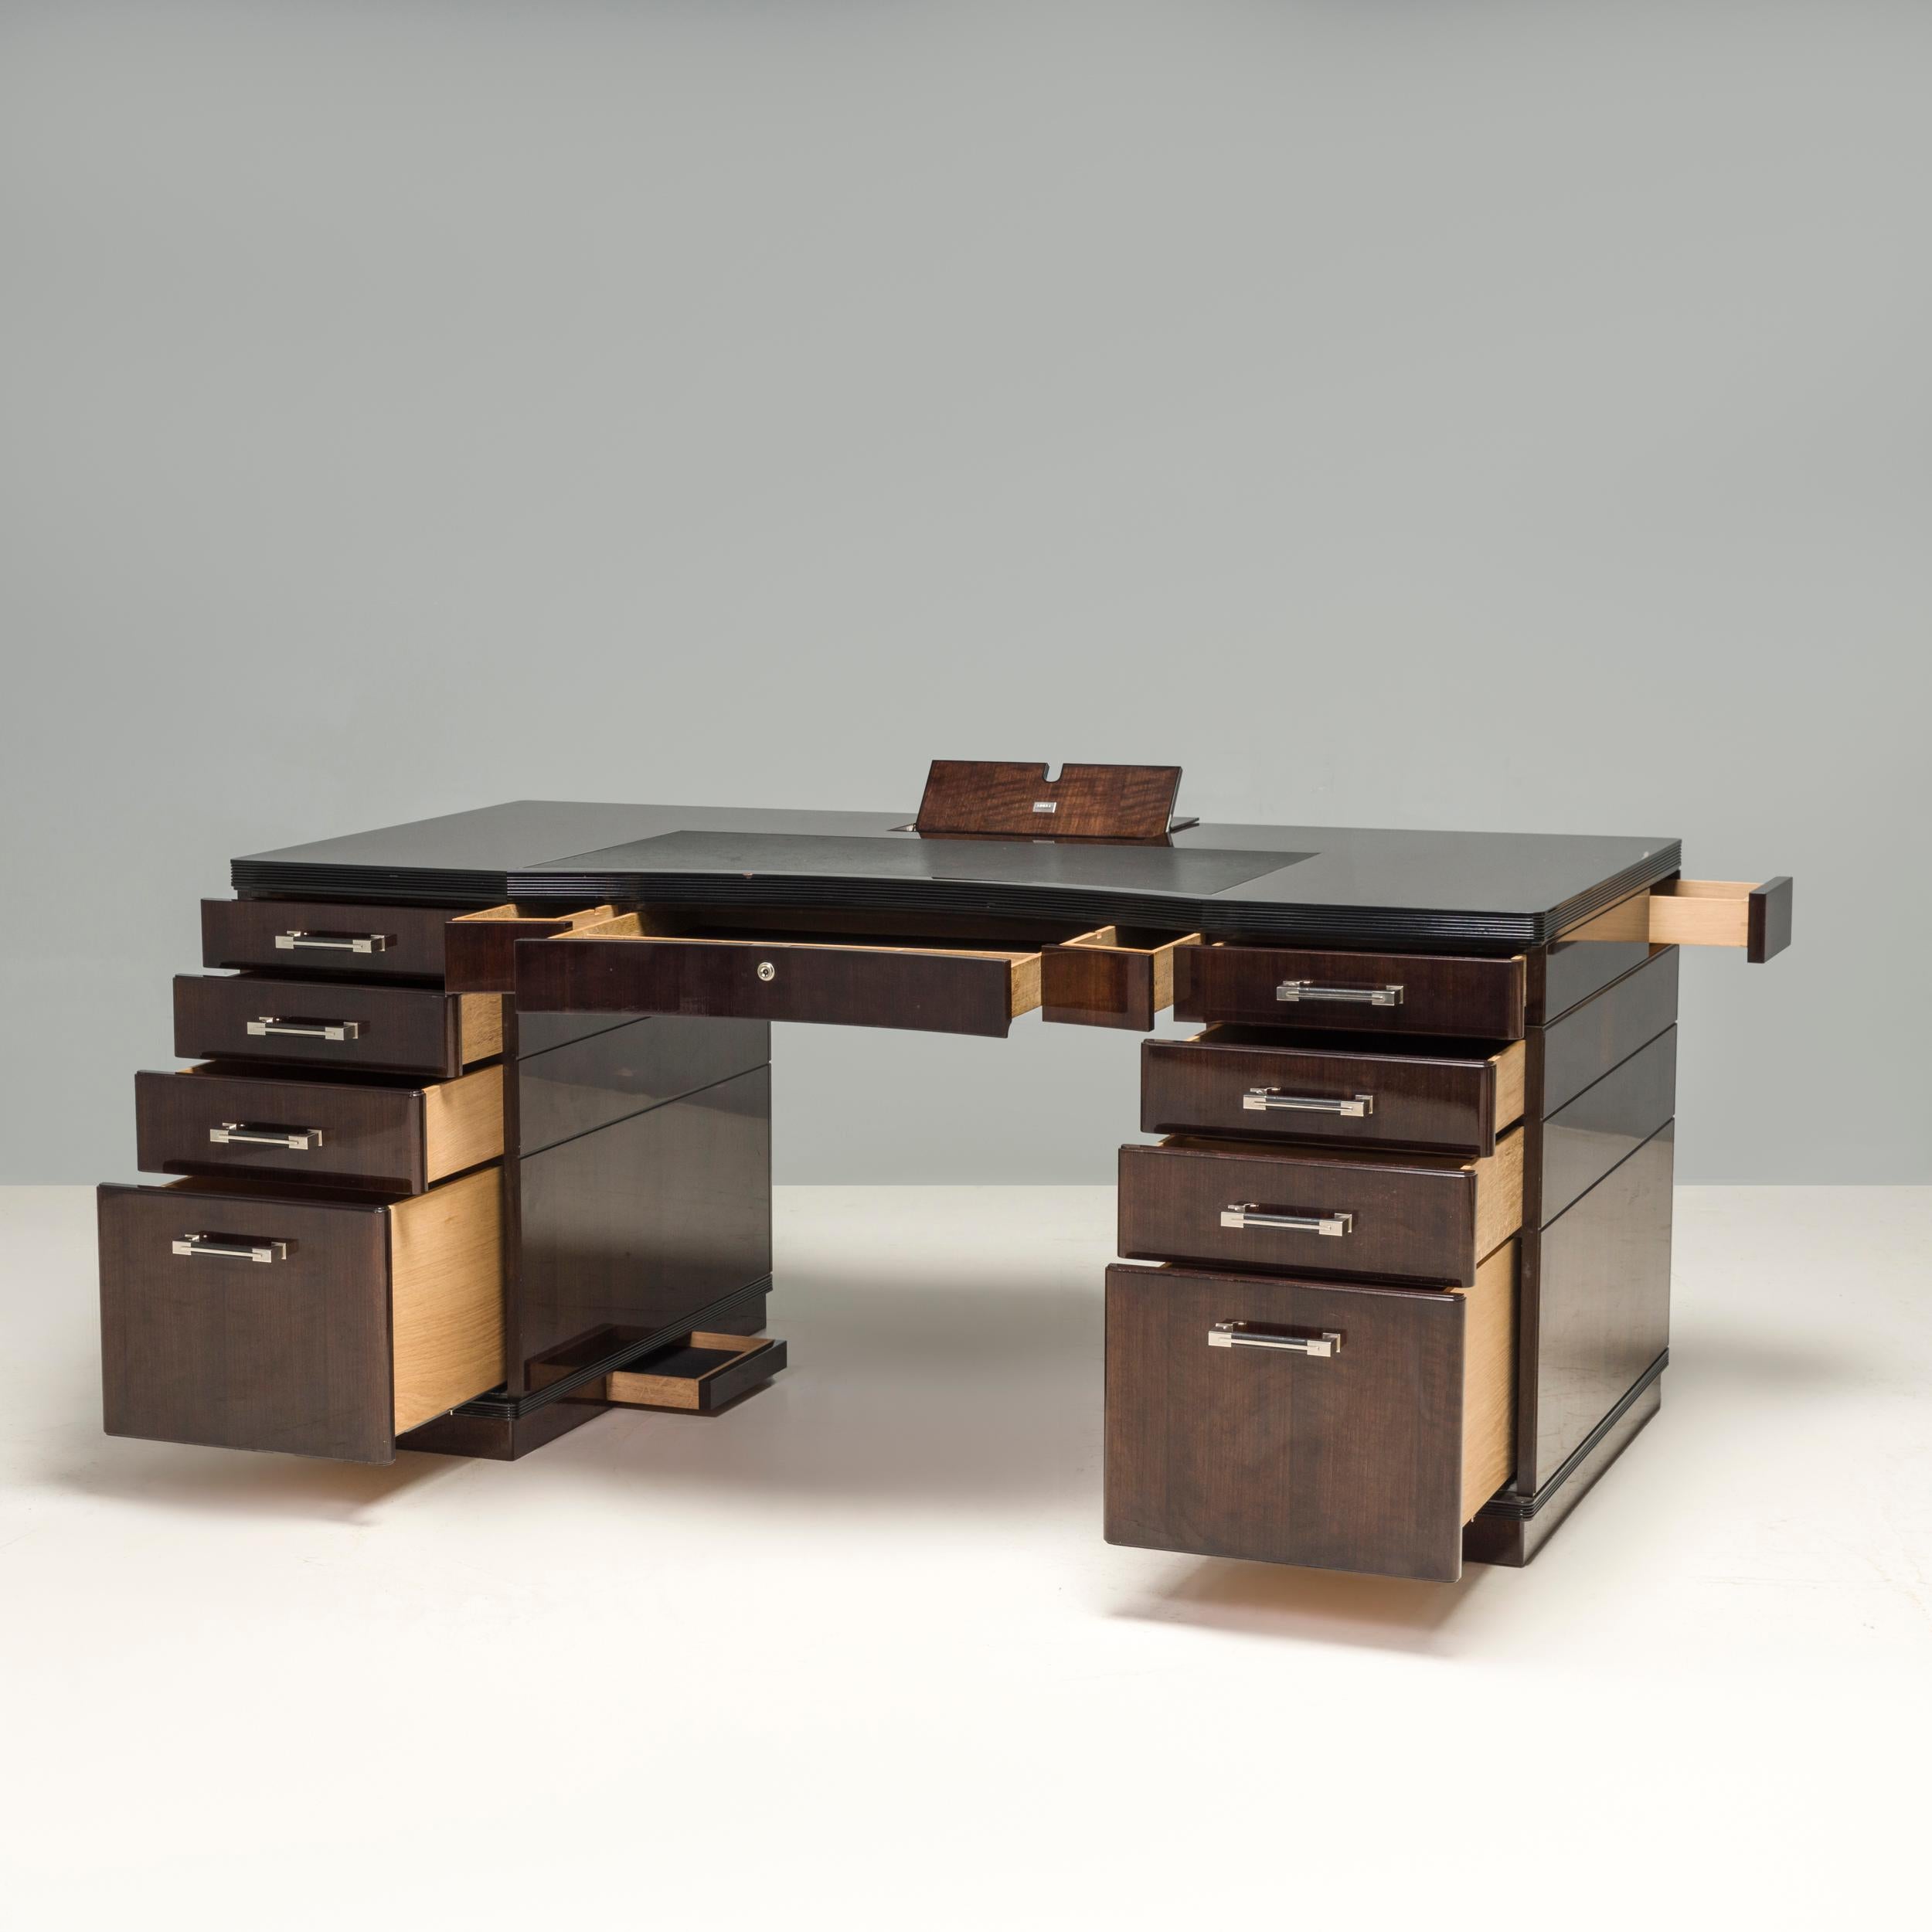 Der wunderschön konstruierte Linley Schreibtisch ist die perfekte Wahl für jedes moderne Heimbüro. Er bietet viel flexiblen Stauraum in einem raffinierten und eleganten Design. Die Schubladen sind intelligent angeordnet, um eine nahtlose